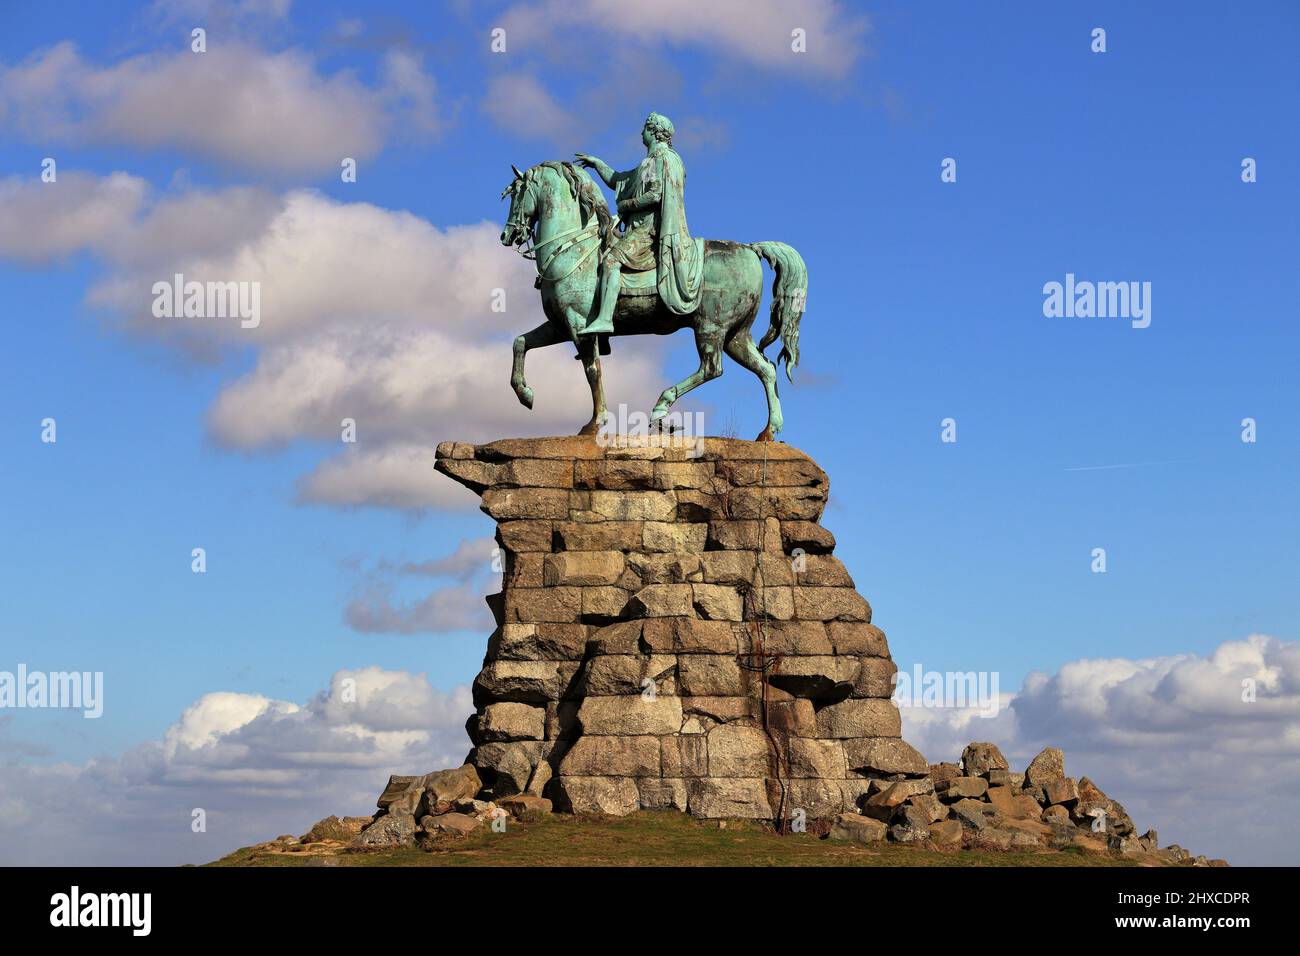 Statua di bronzo di Giorgio III a Horseback contro un cielo blu, adagiato su una base di pietra su Snow Hill, Windsor Great Park Foto Stock